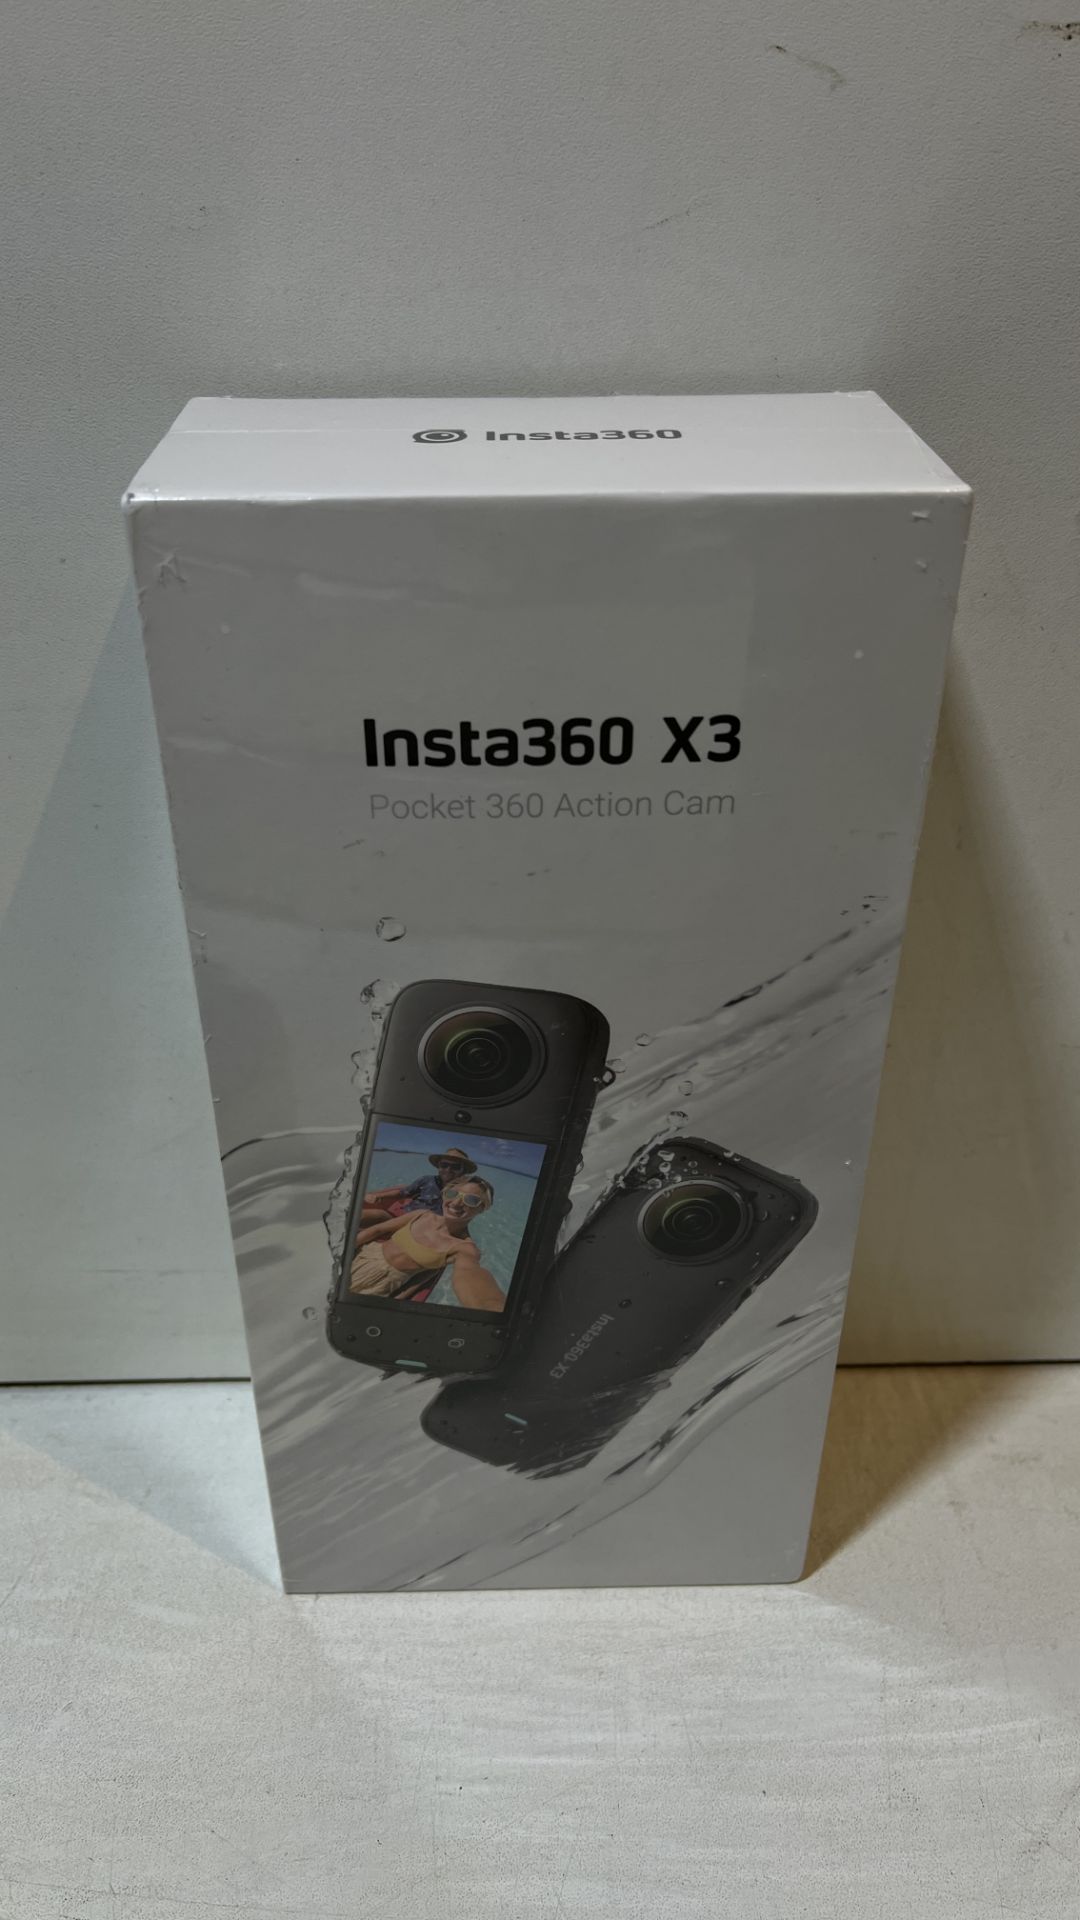 Insta360 X3 Pocket 360 Action Cam